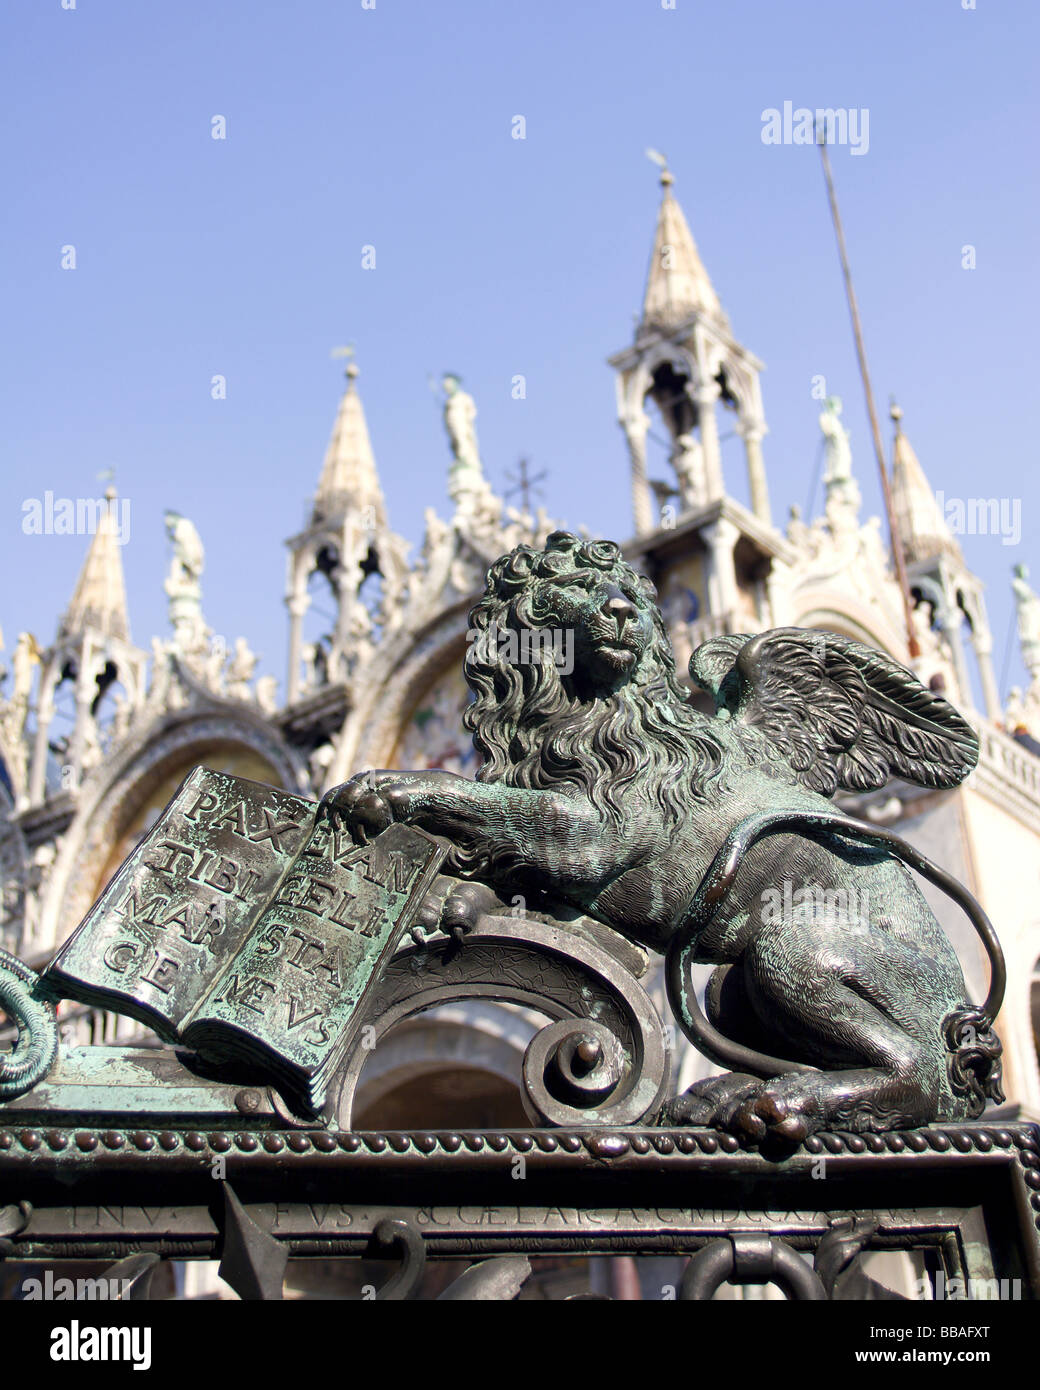 Venezia - Leone di st. Marco patrono della città -dettaglio dalla porta dalla torre campanaria Foto Stock